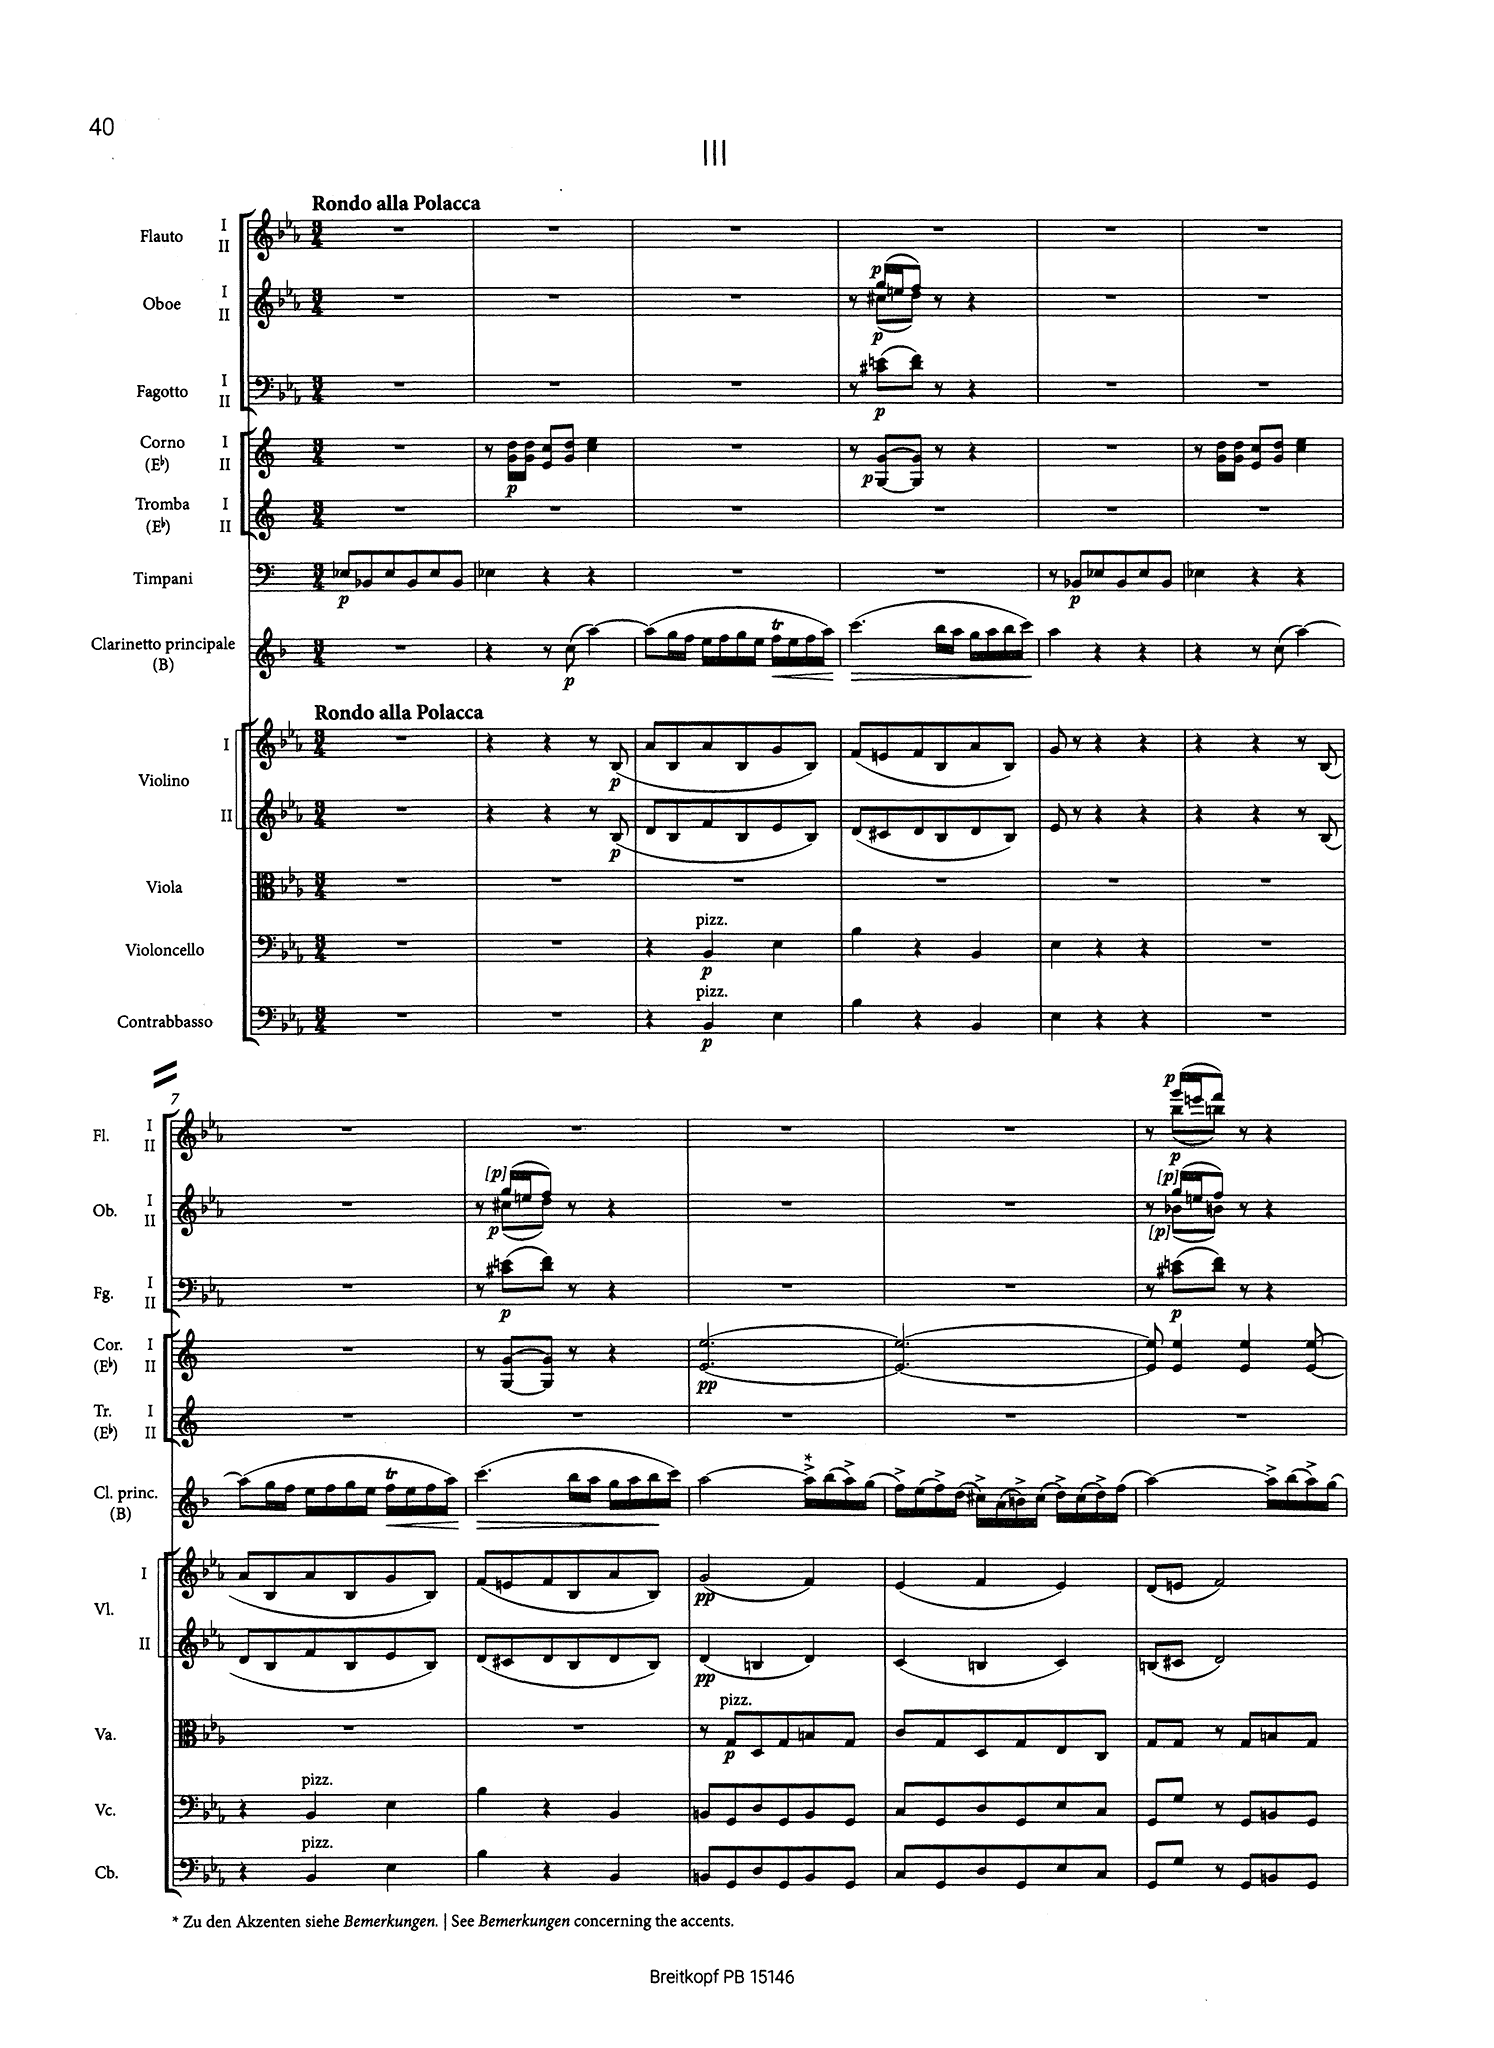 Spohr Clarinet Concerto No. 2 in E-flat Major, Op. 57 mini score - Movement 3